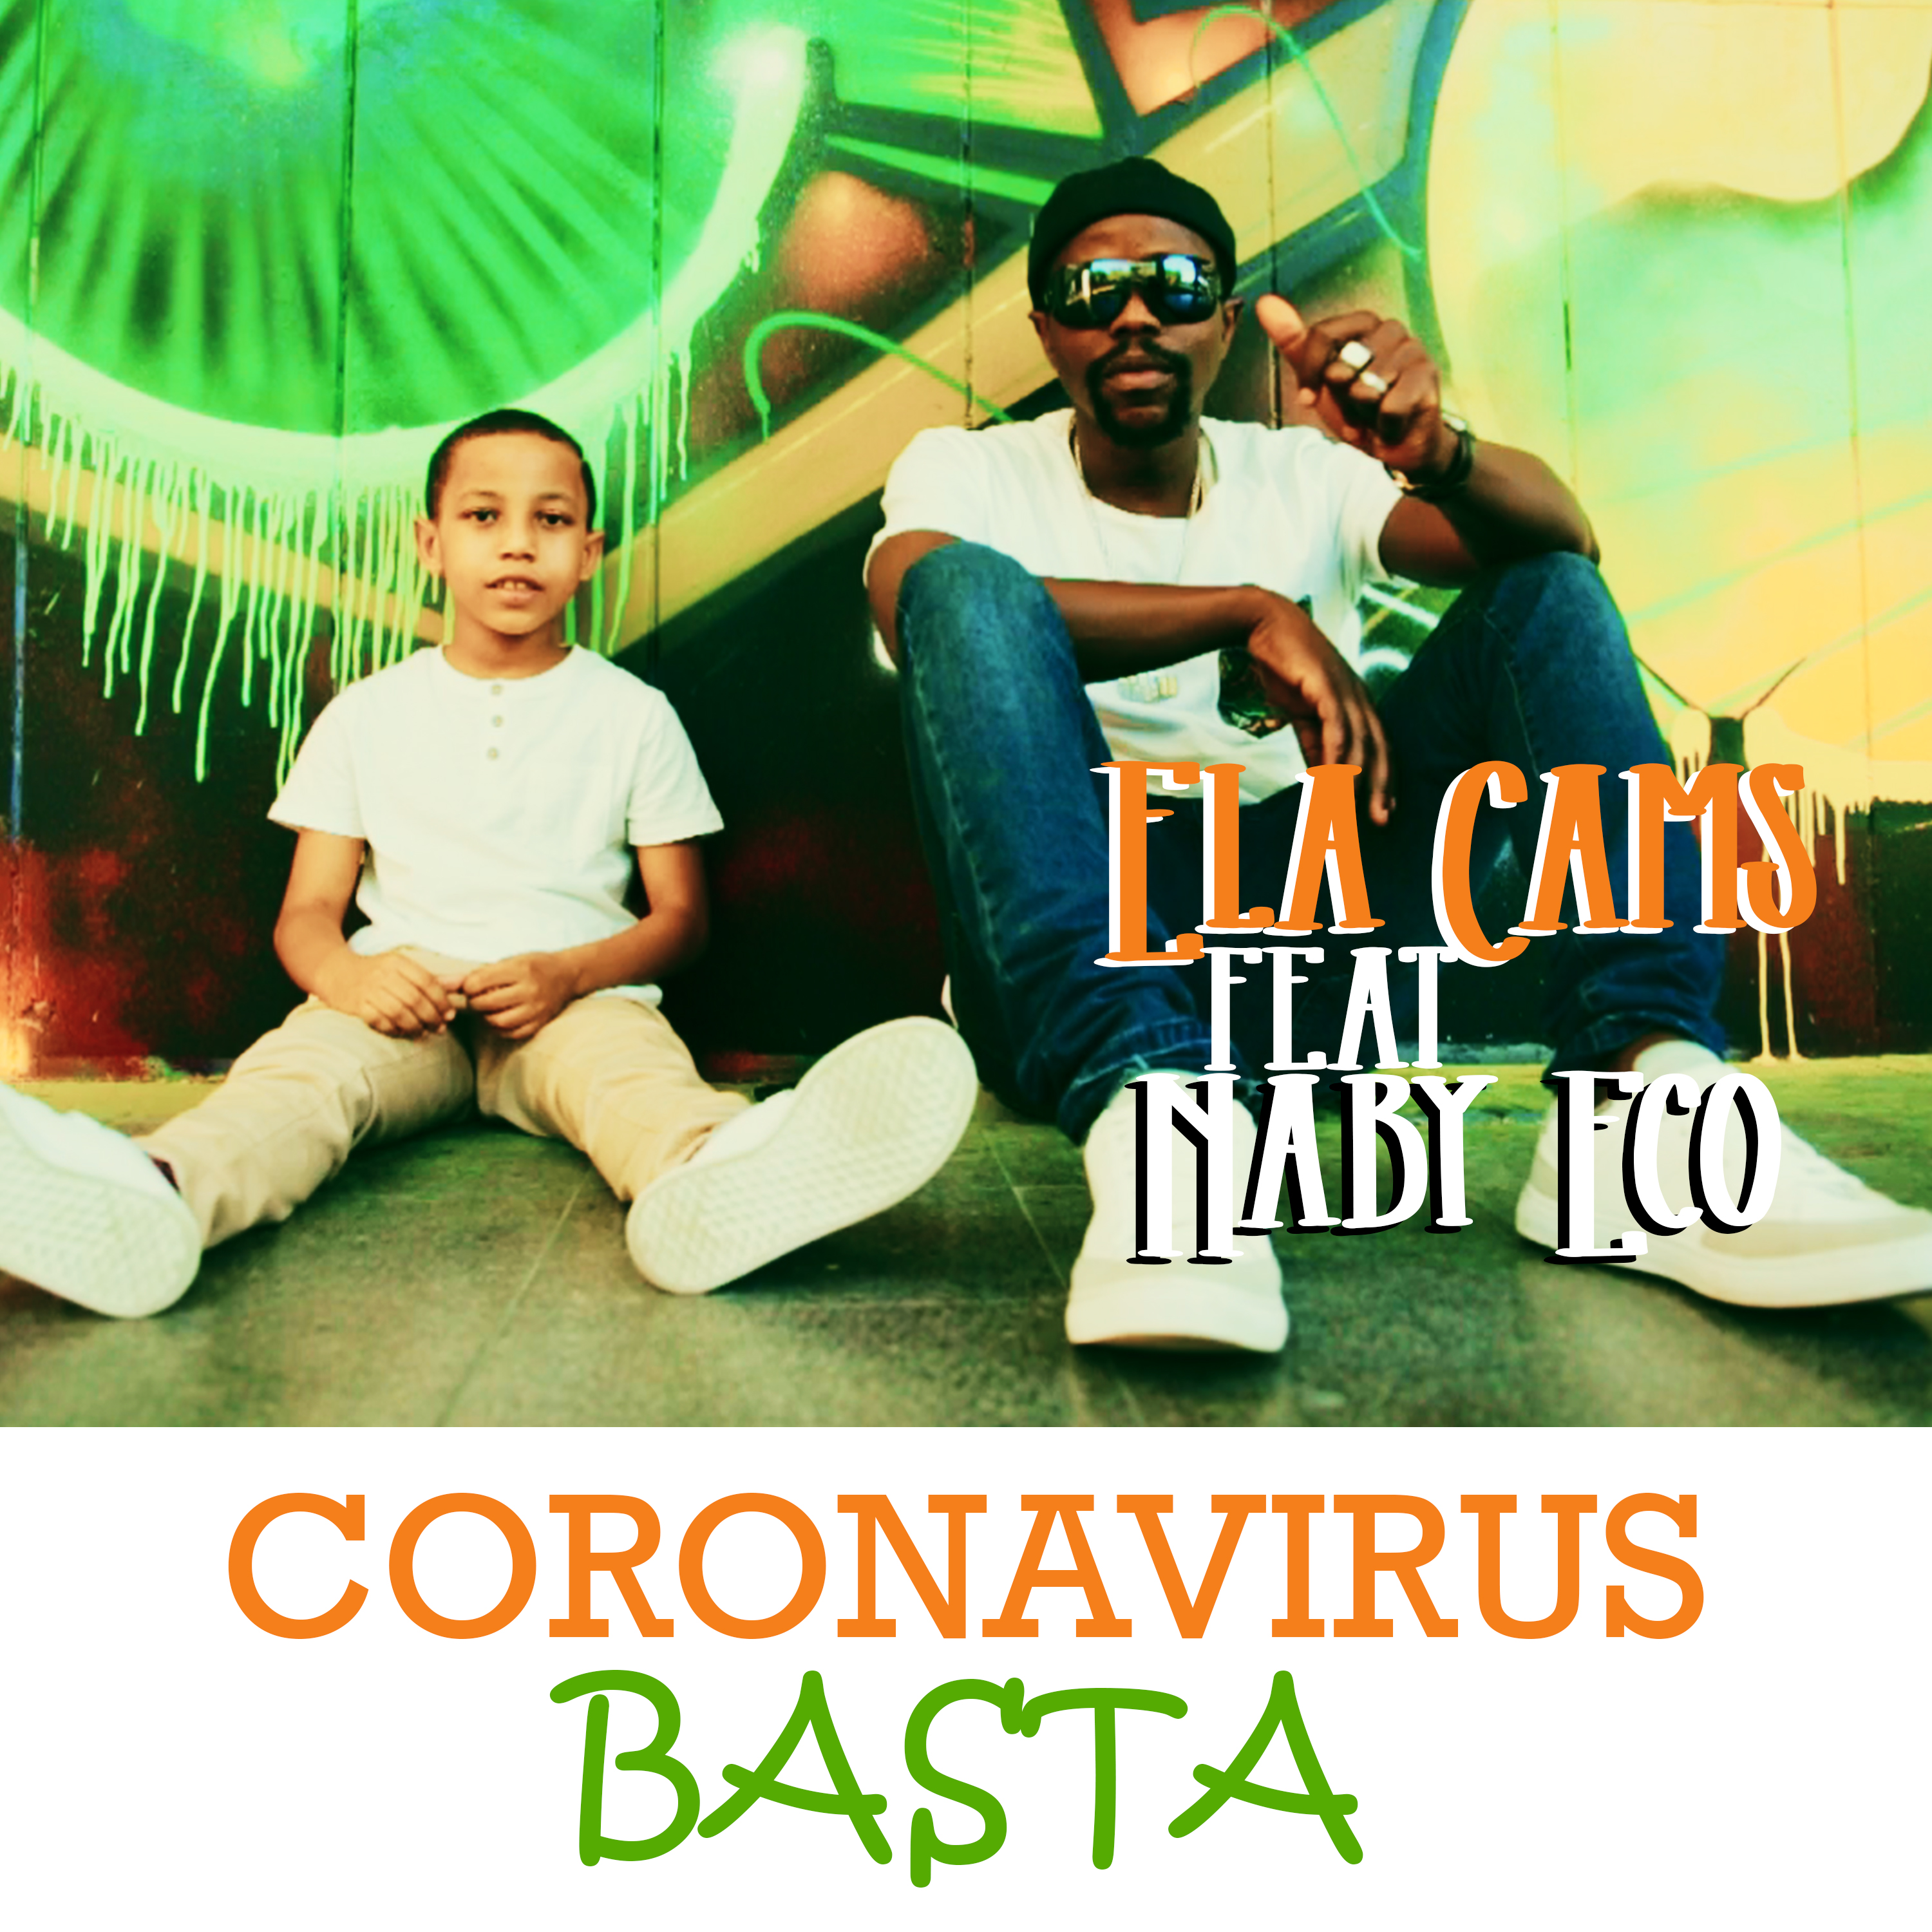 Il 15 agosto esce il video ufficiale del brano “Coronavirus basta”, interpretato dal giovanissimo Ela Cams con il featuring del noto artista guineano Naby Eco Camara